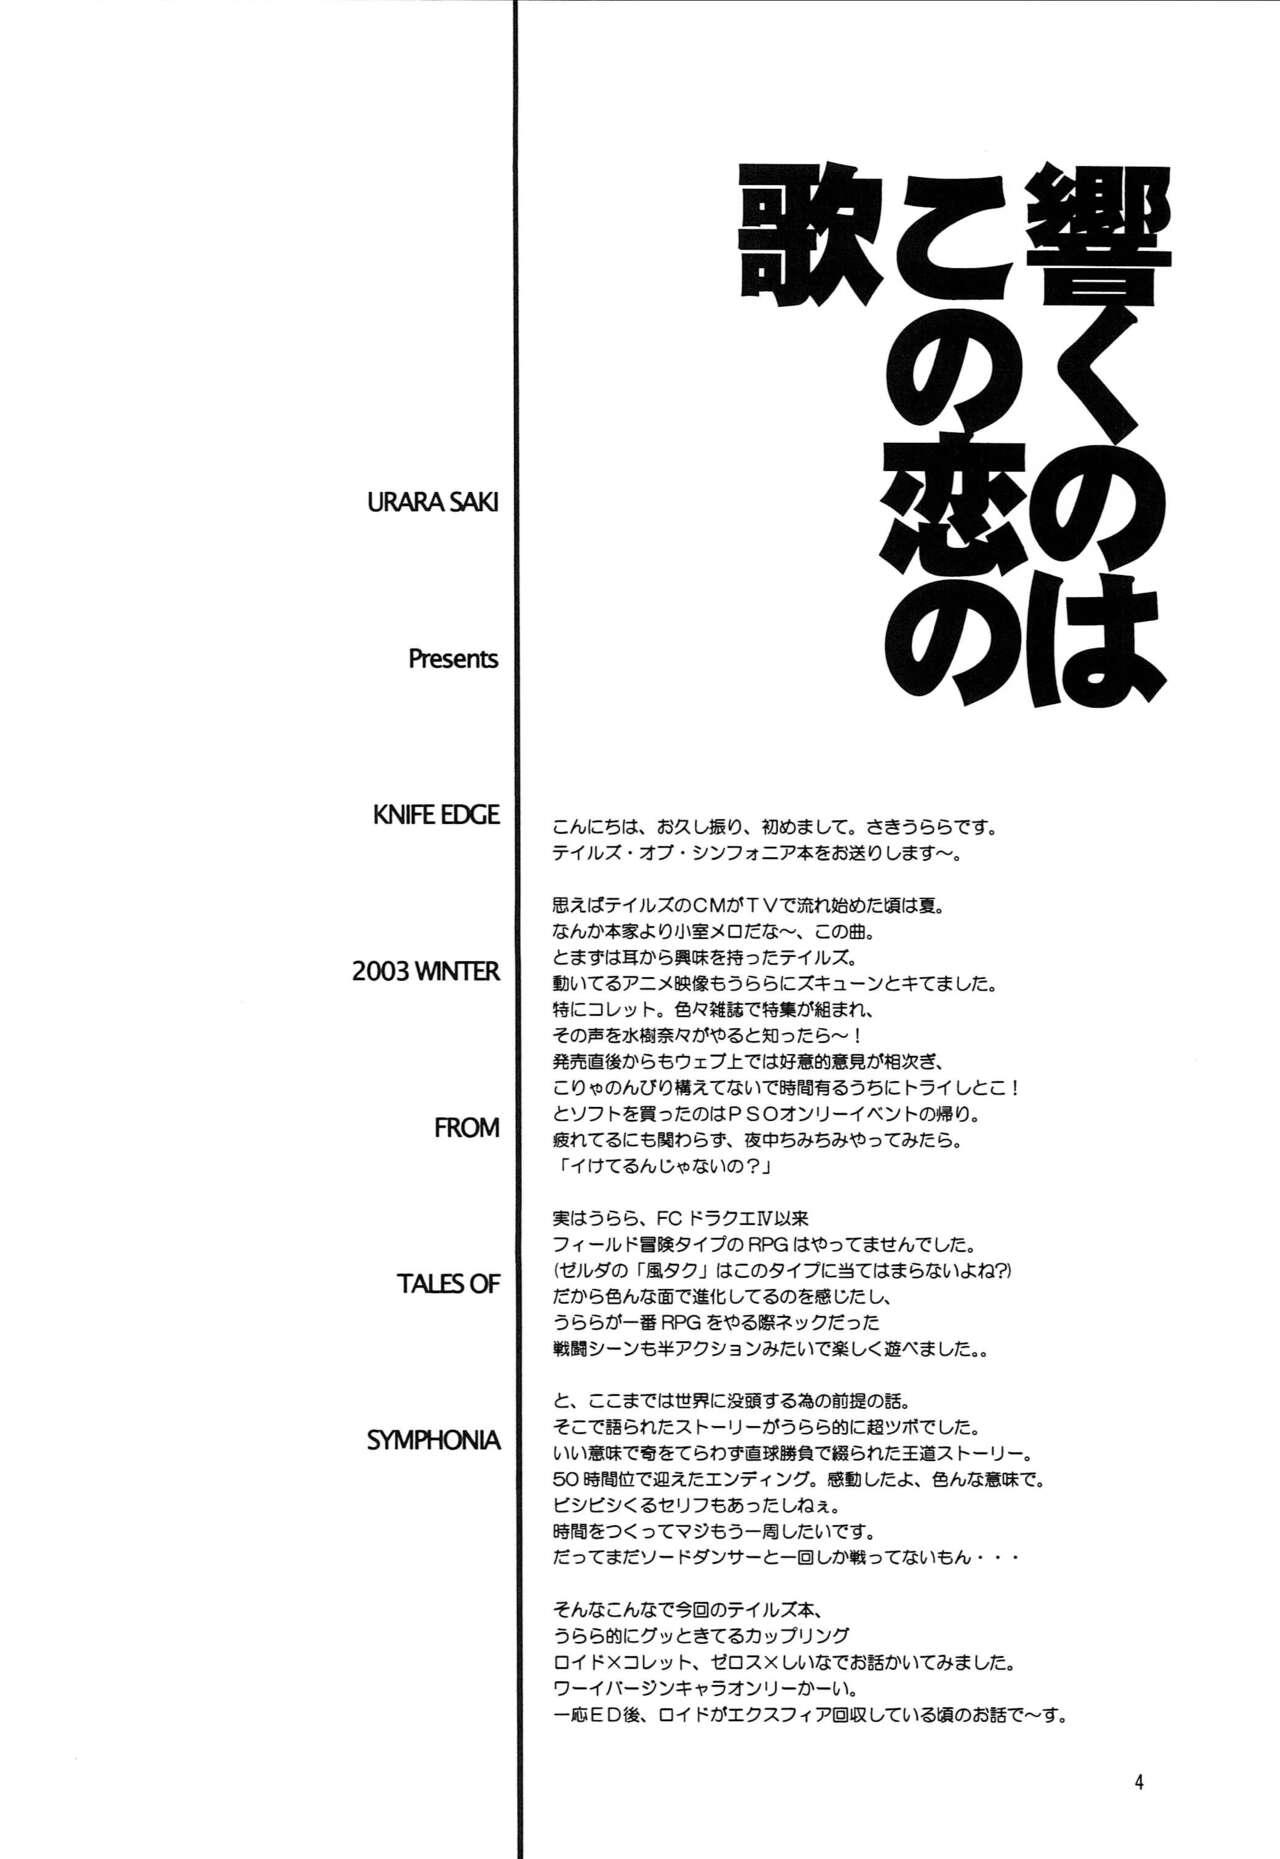 Chupando Hibiku no wa, Kono Koi no Uta - Tales of symphonia Cumshot - Page 3